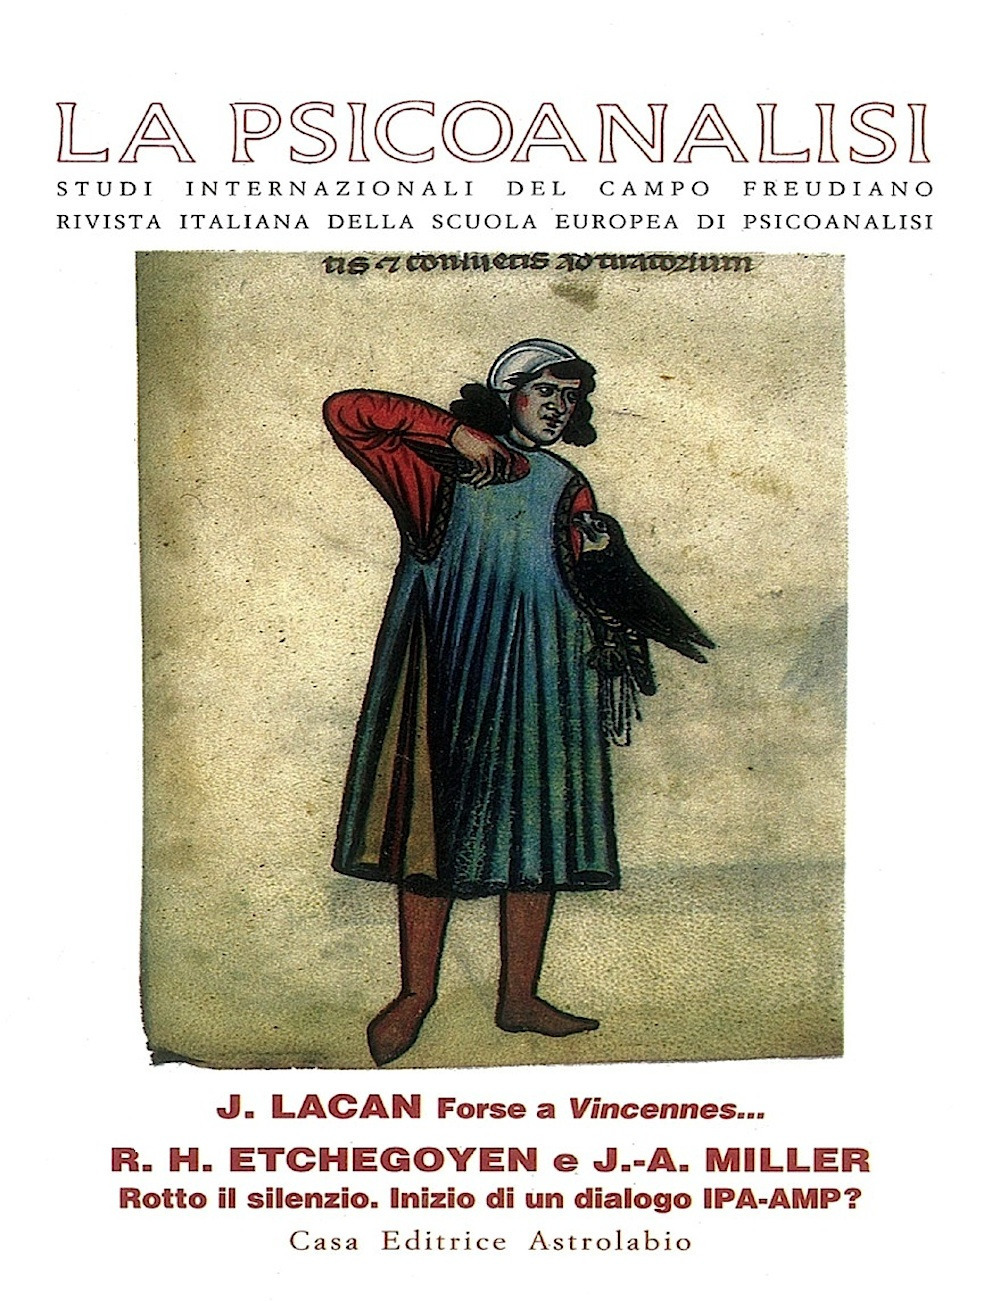 La psicoanalisi. Vol. 21: Jacques Lacan: forse a Vincennes...-R. H. Etchegoyen e J. A. Miller: rotto il silenzio. Inizio di un dialogo IPA-AMP